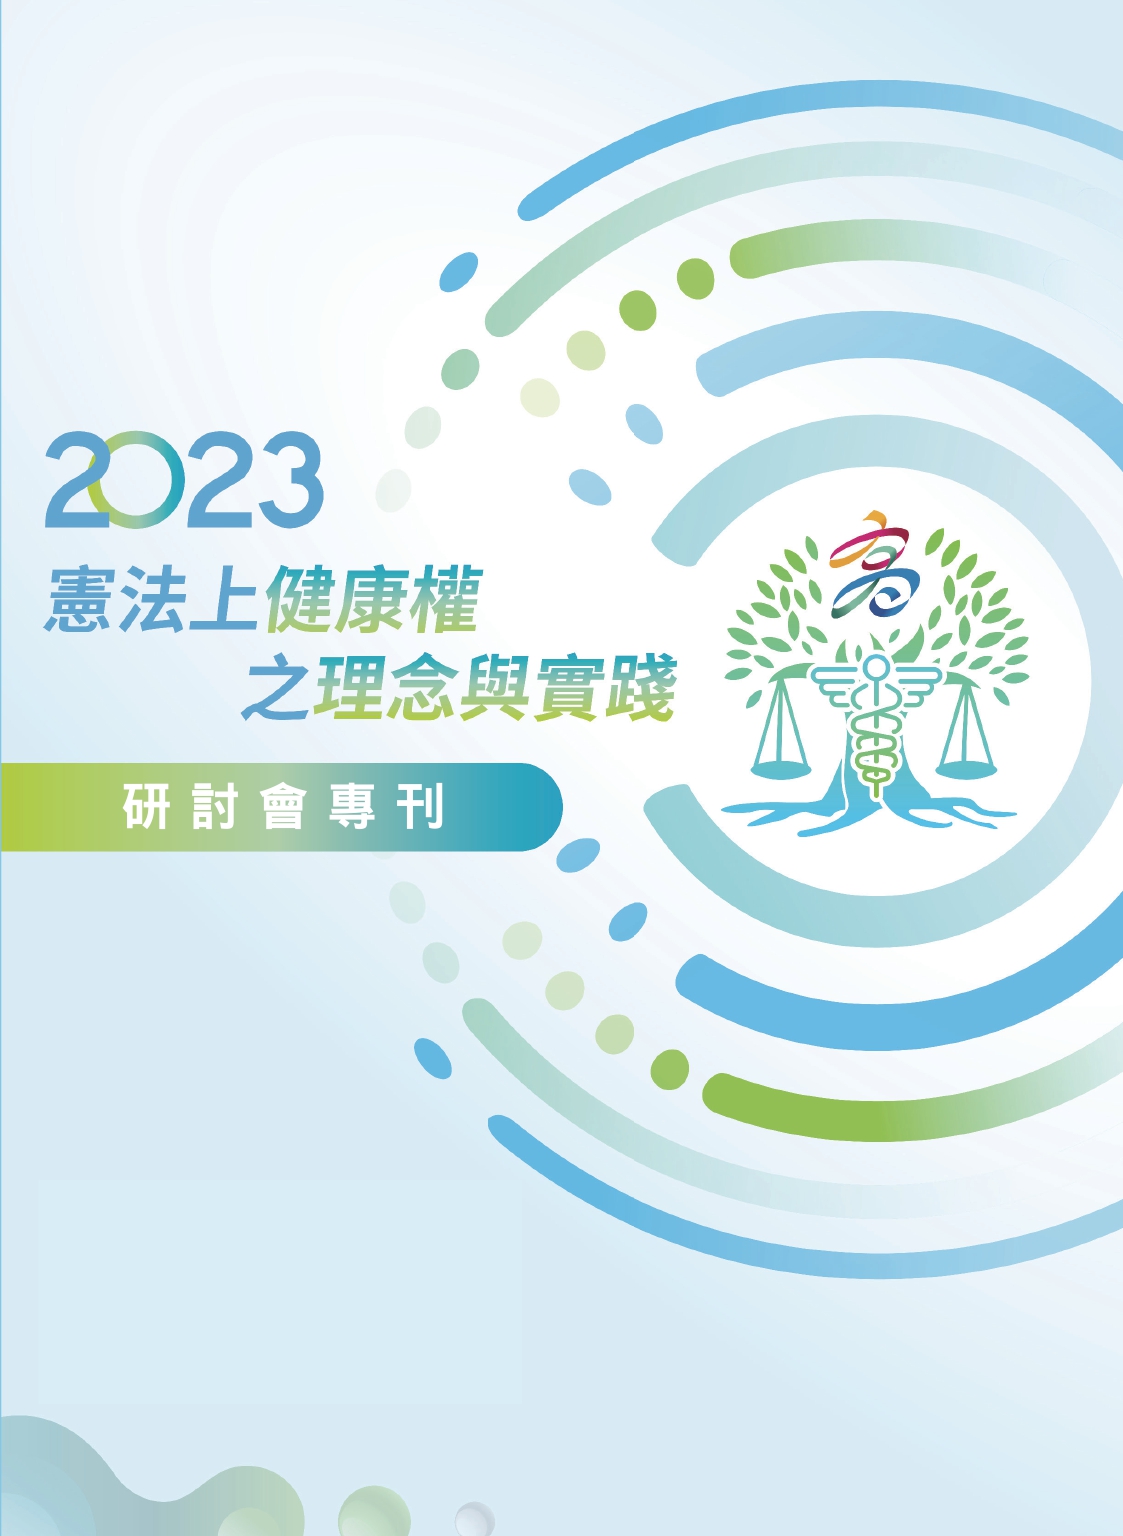 「2023憲法上健康權之理念與實踐」研討會專刊